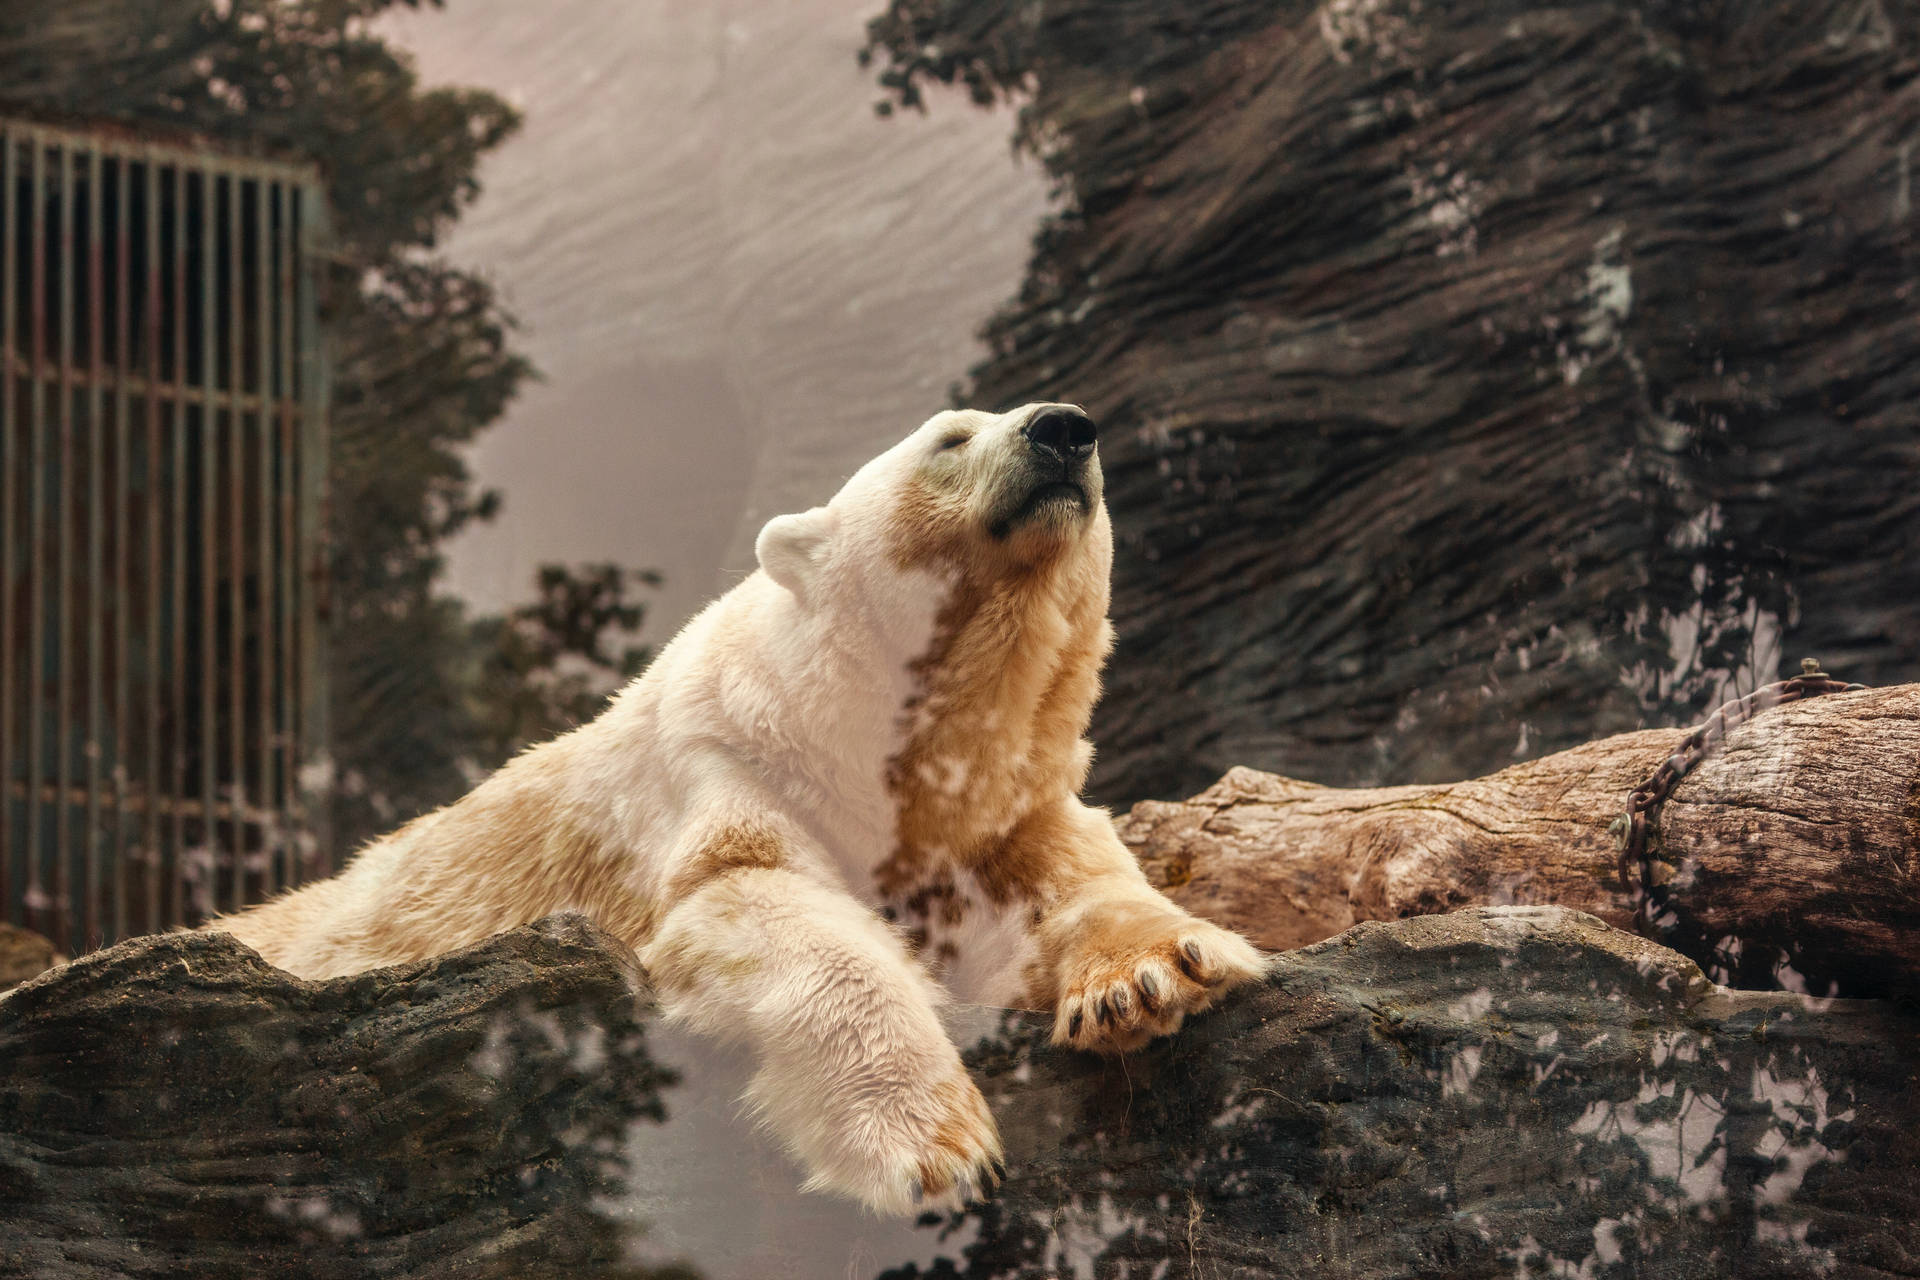 Denvackraste Hd-isbjörnen. Wallpaper